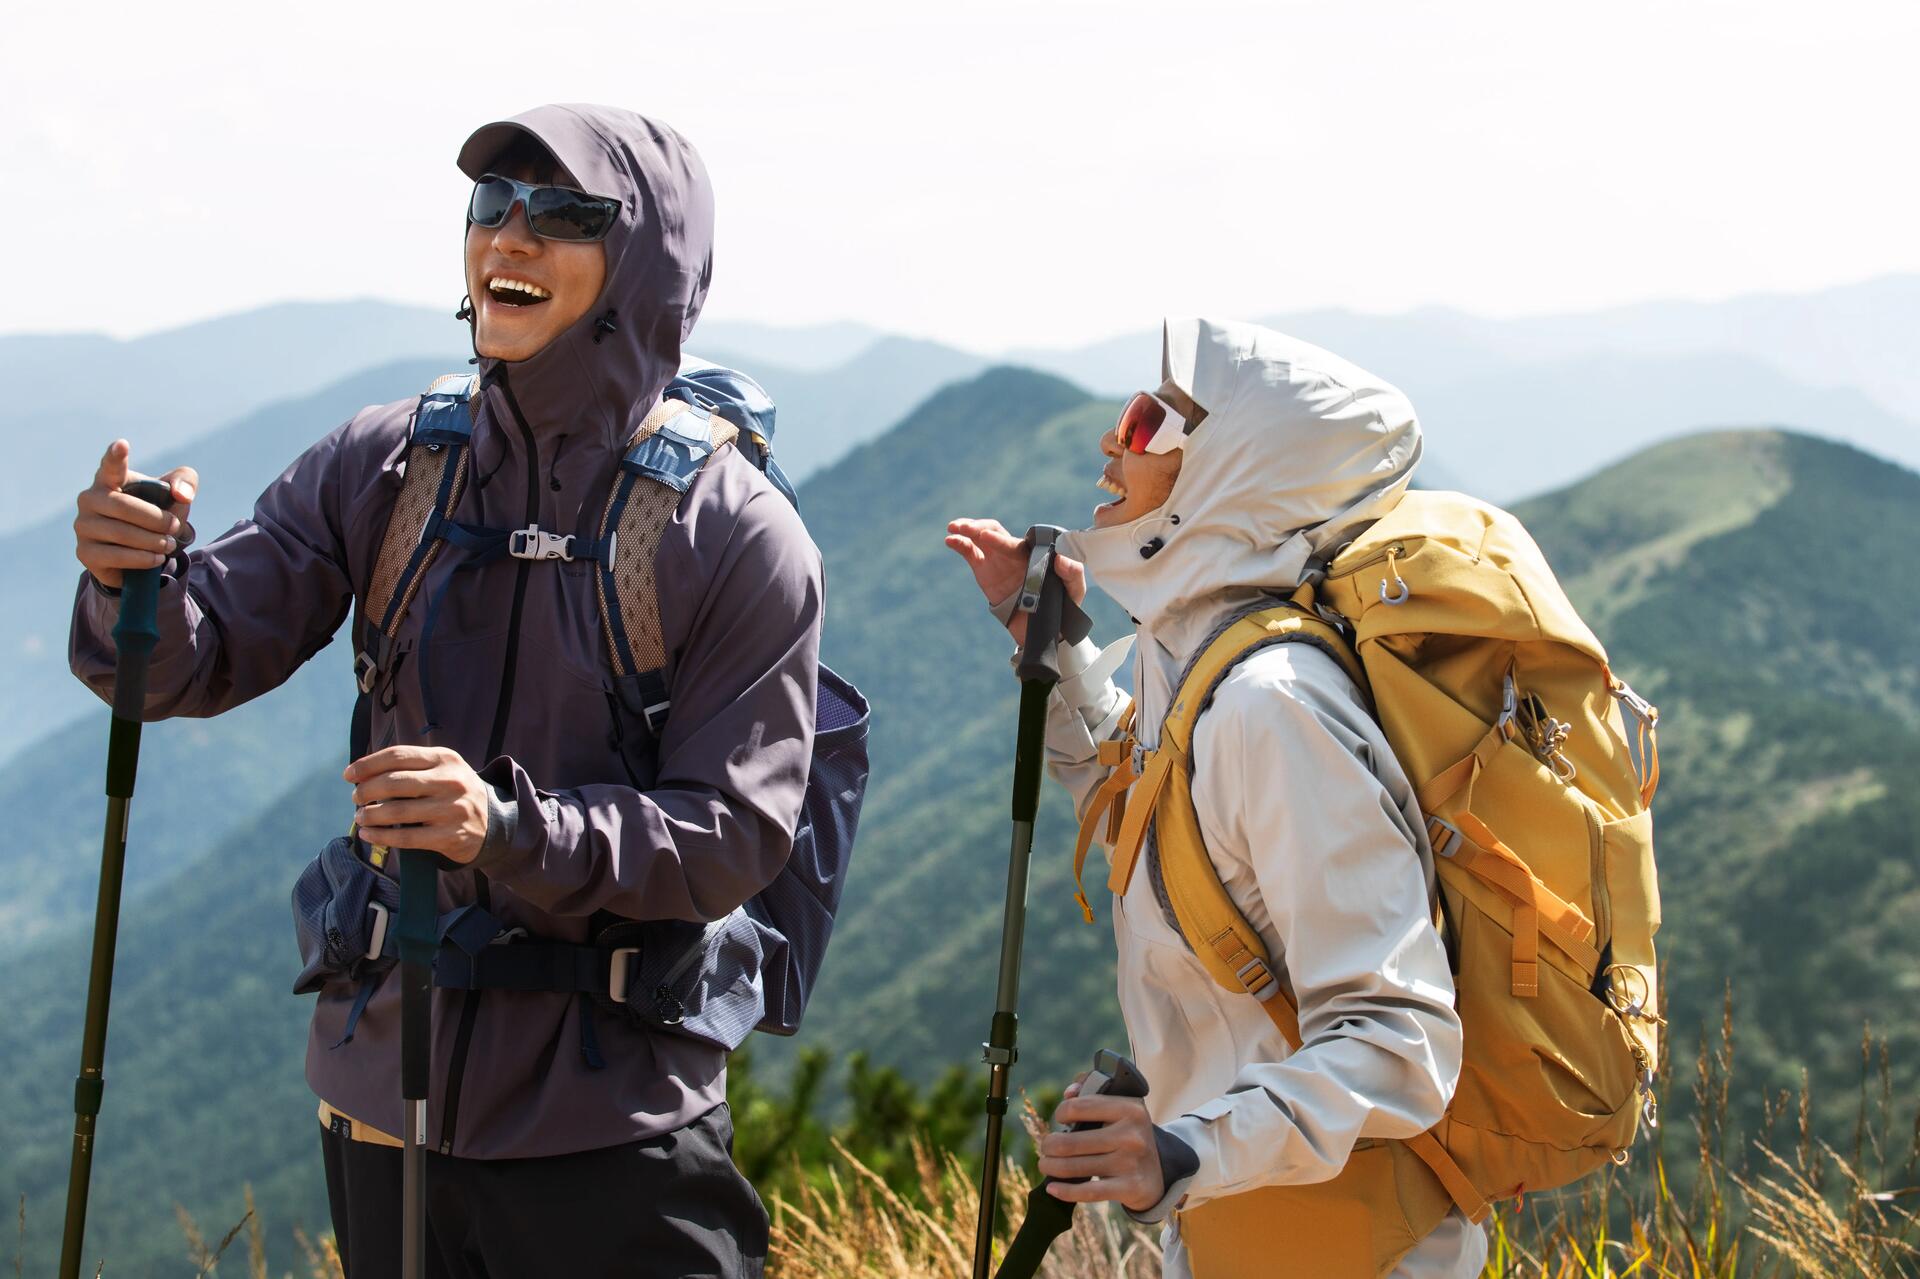 Kobieta i mężczyzna z założonymi okularami w góry stojący na szlaku trzymając kije trekkingowe w rękach